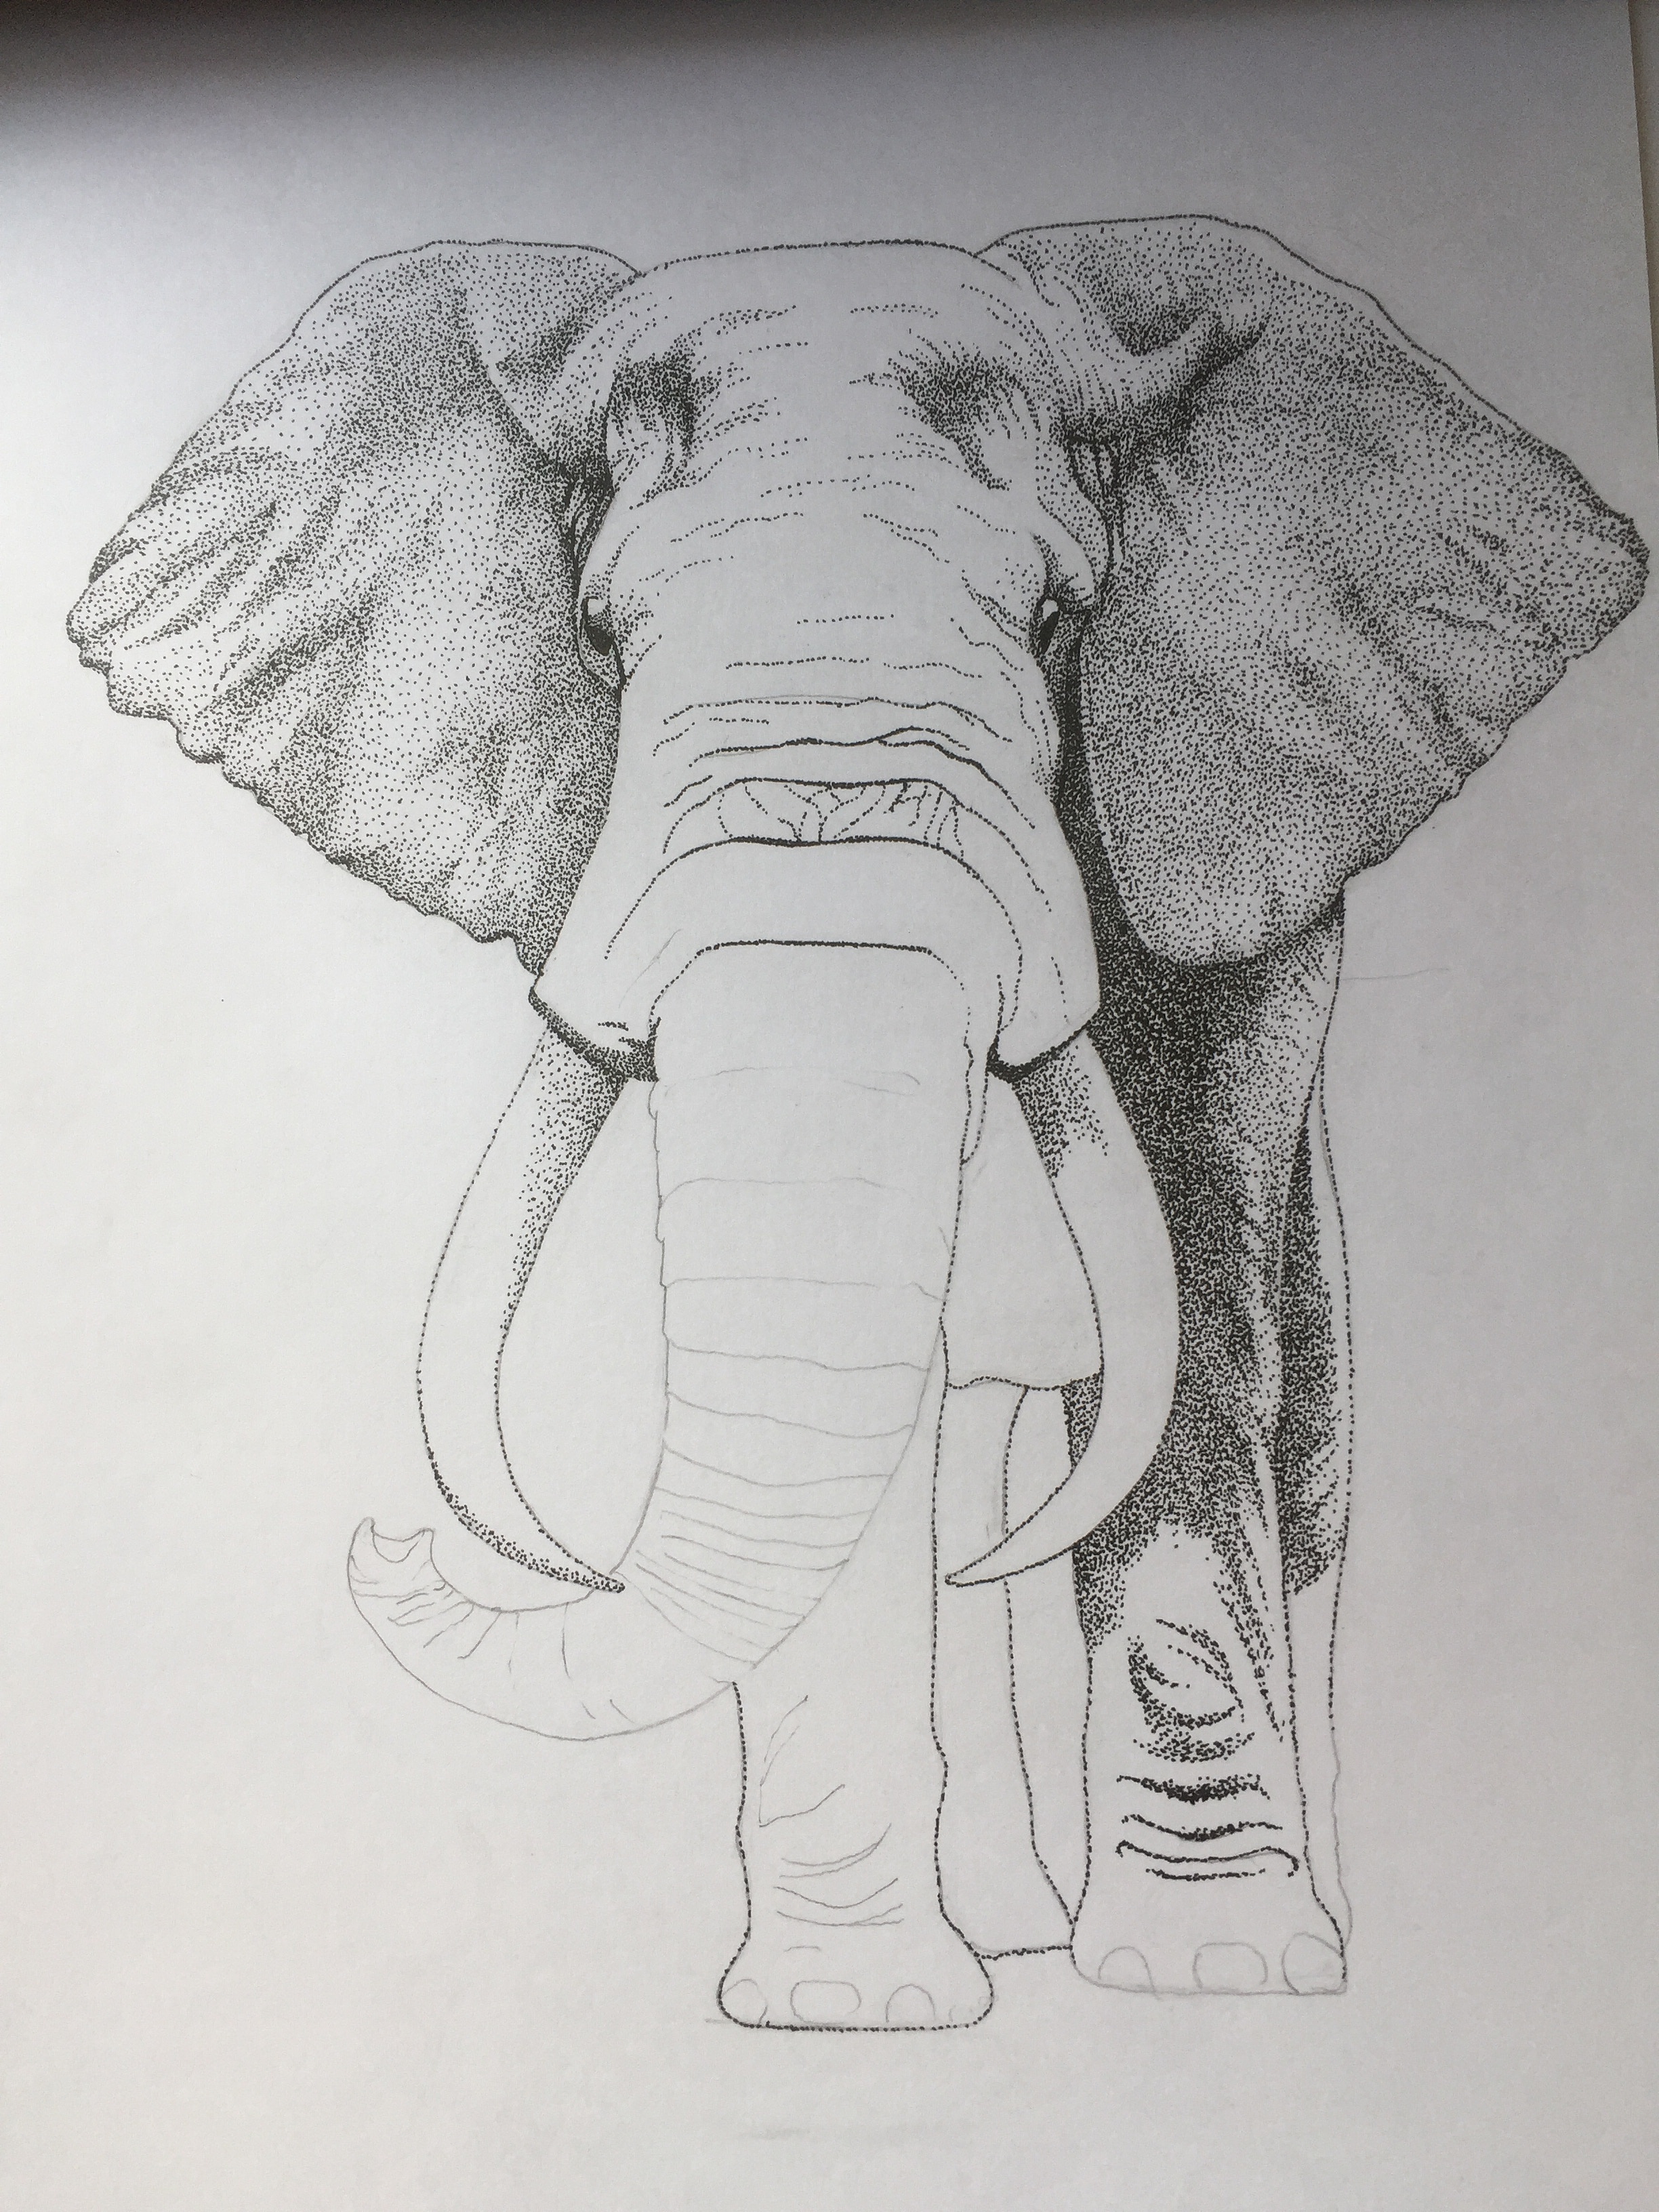 简单漂亮动物简笔画 简笔画大象的画法图解教程 肉丁儿童网